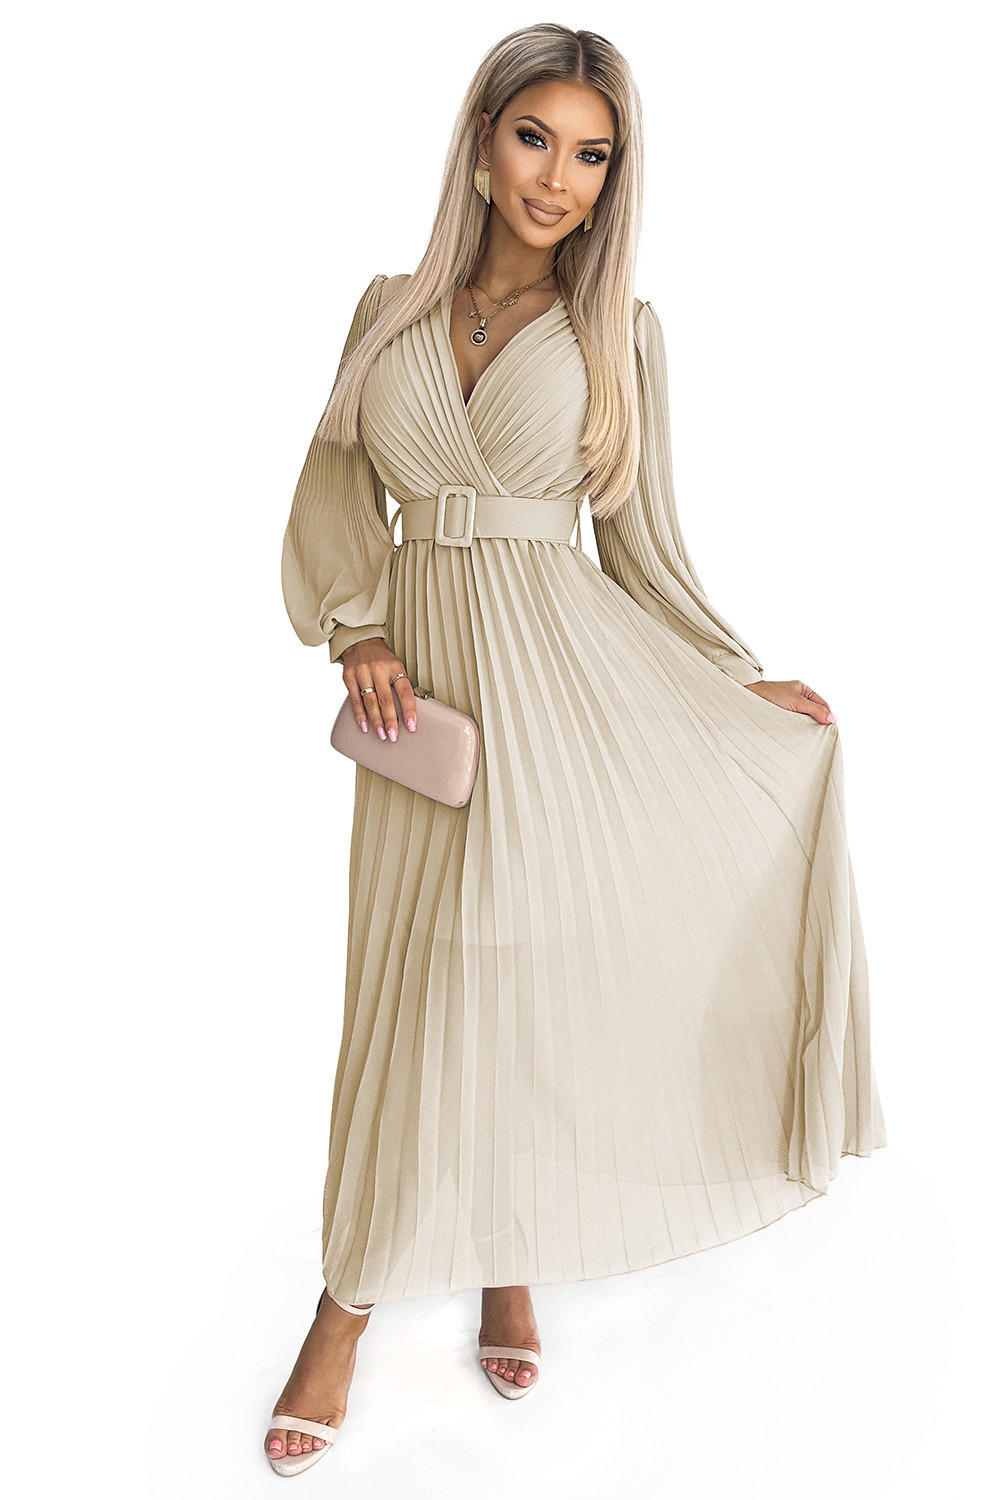 KLARA - Béžové dámské plisované šaty s opaskem a výstřihem 414-8 UNI